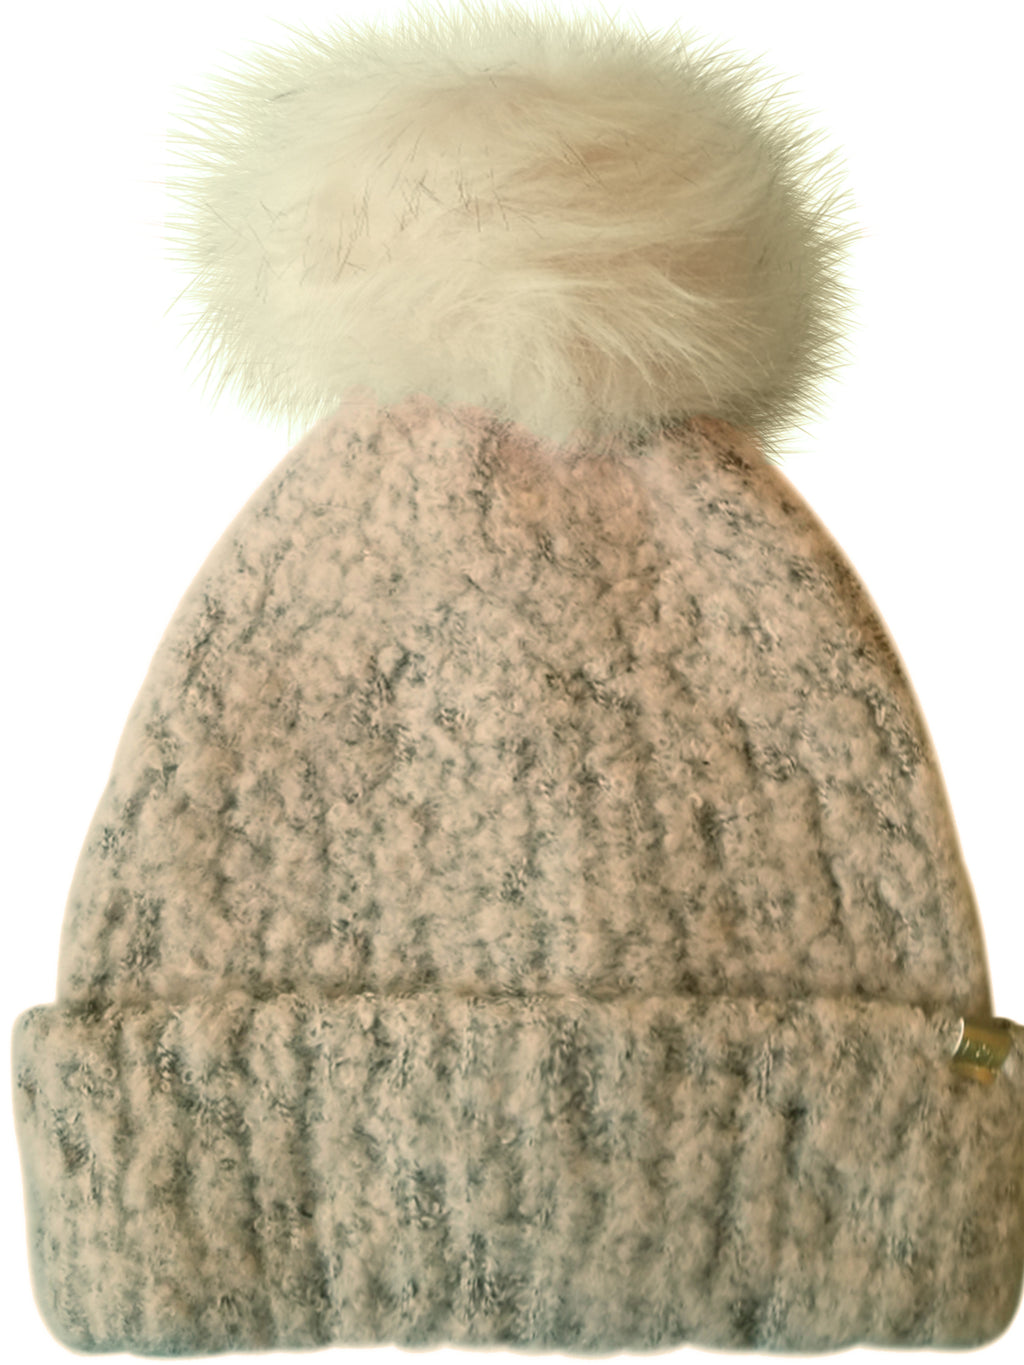 Beige Knit Beanie Hat With Faux Fur Pom Pom